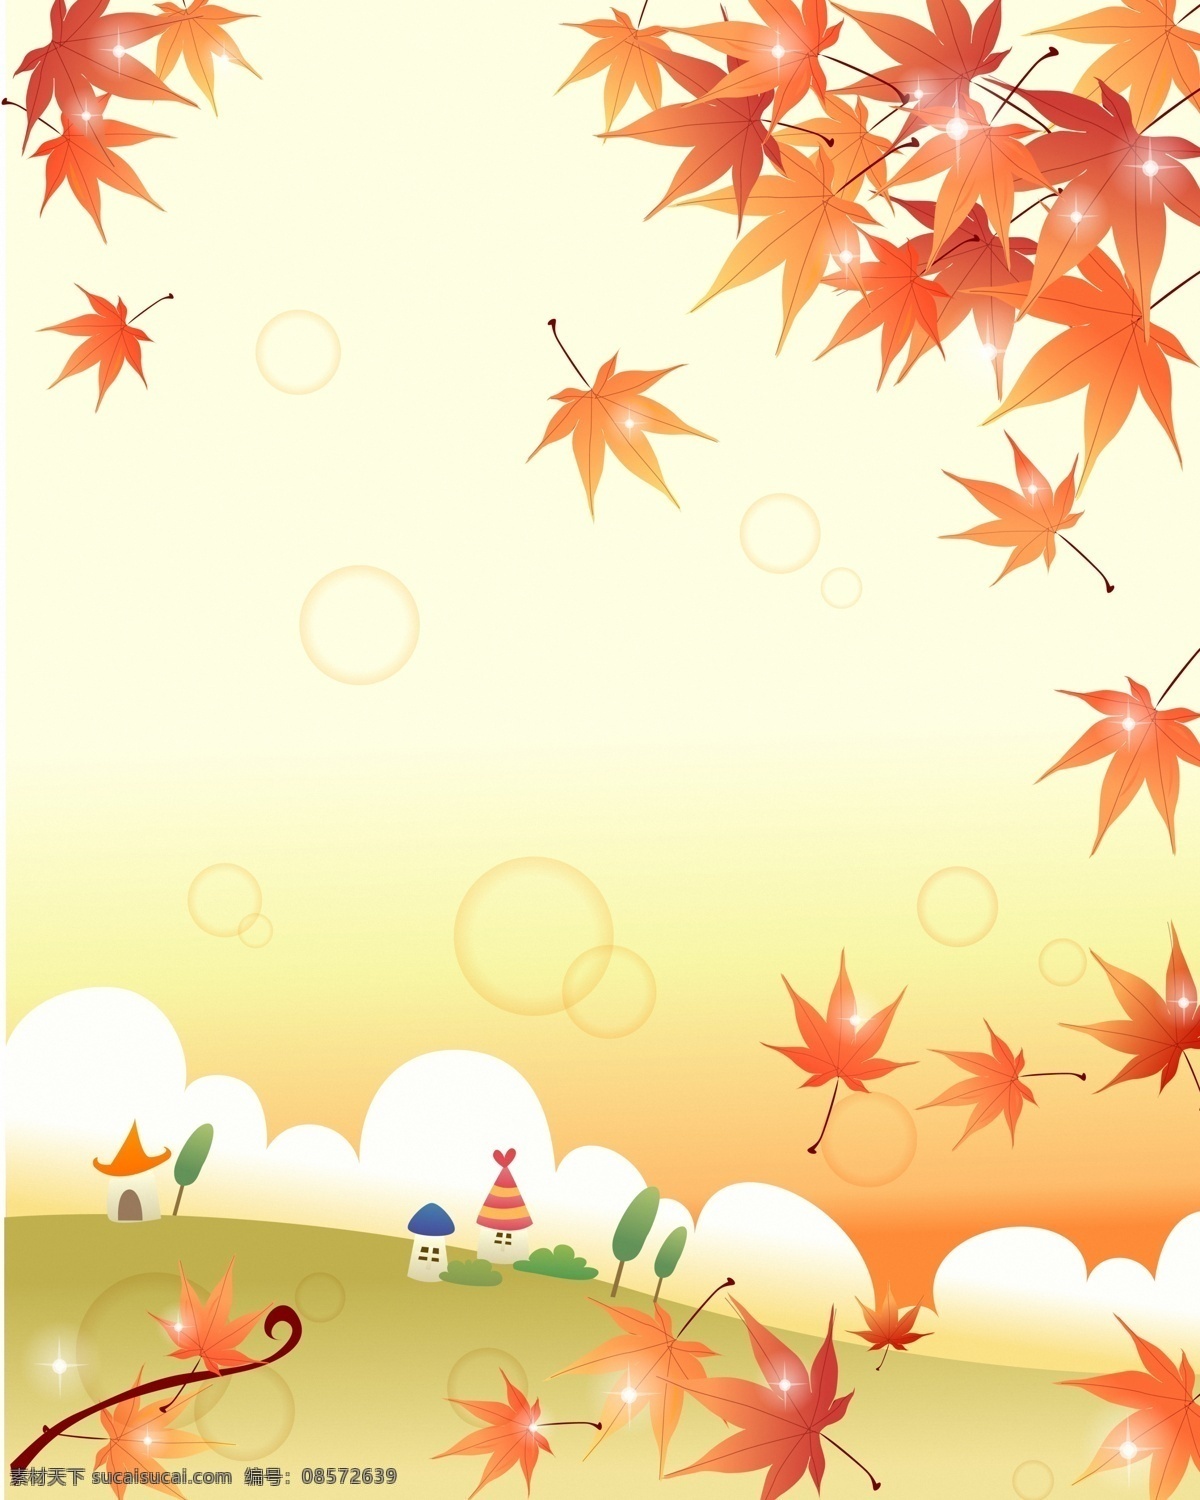 儿童 插画 背景 素材图片 枫叶 房子 卡通背景 花朵 鲜花 树叶 植物 叶子 花草树木 梦幻背景 底纹背景 生物世界